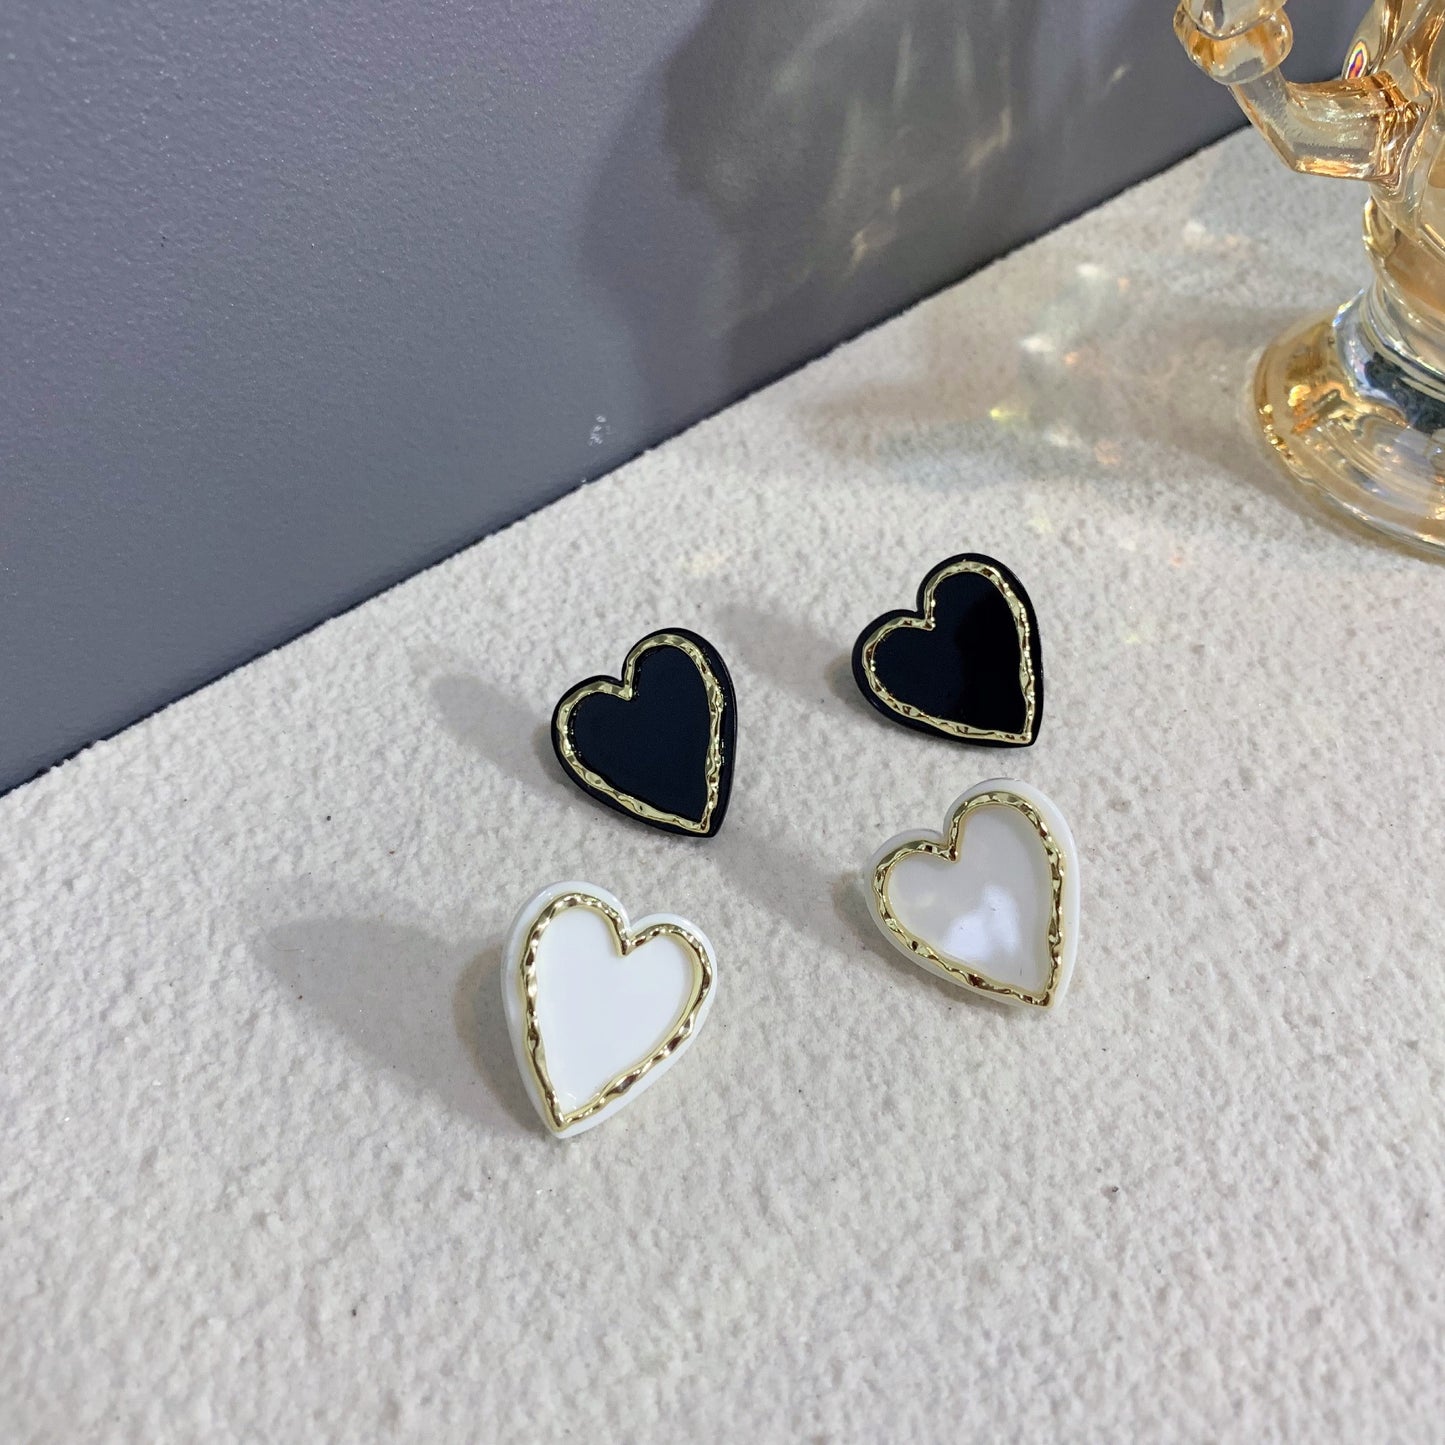 Women's Edge Lovely Acrylic For Black Heart Earrings